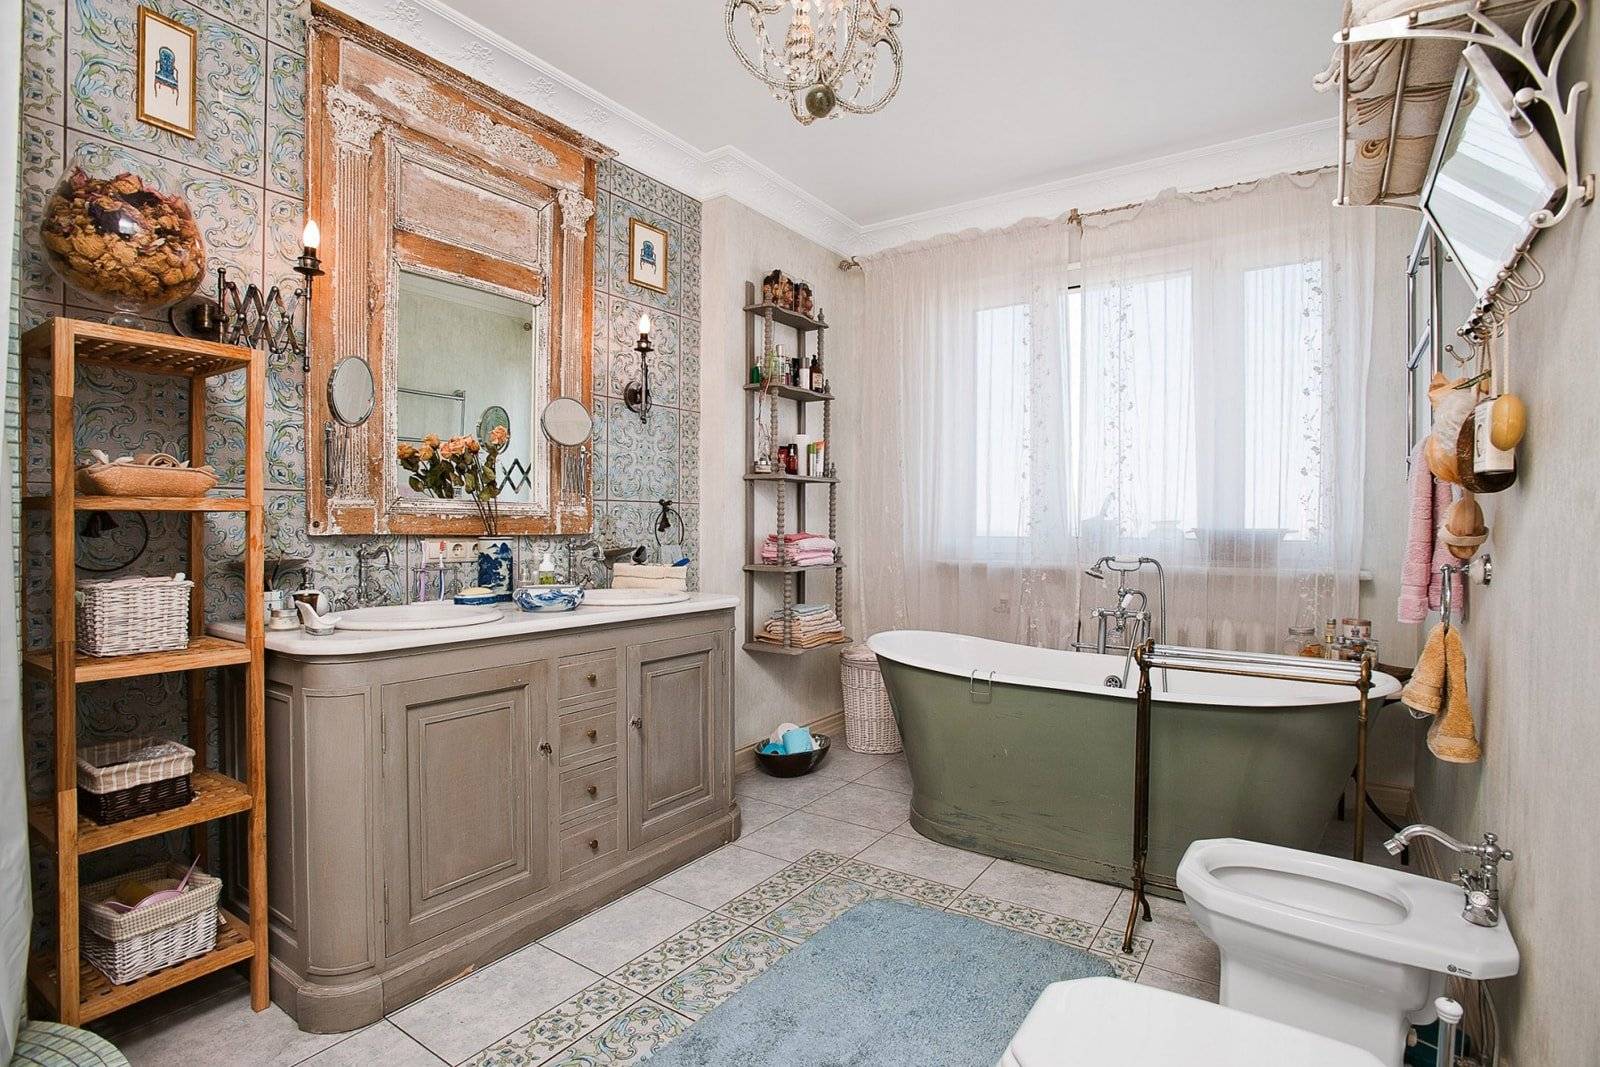 Ванная комната в ретро стиле, фото винтажных дизайнов и интерьеров